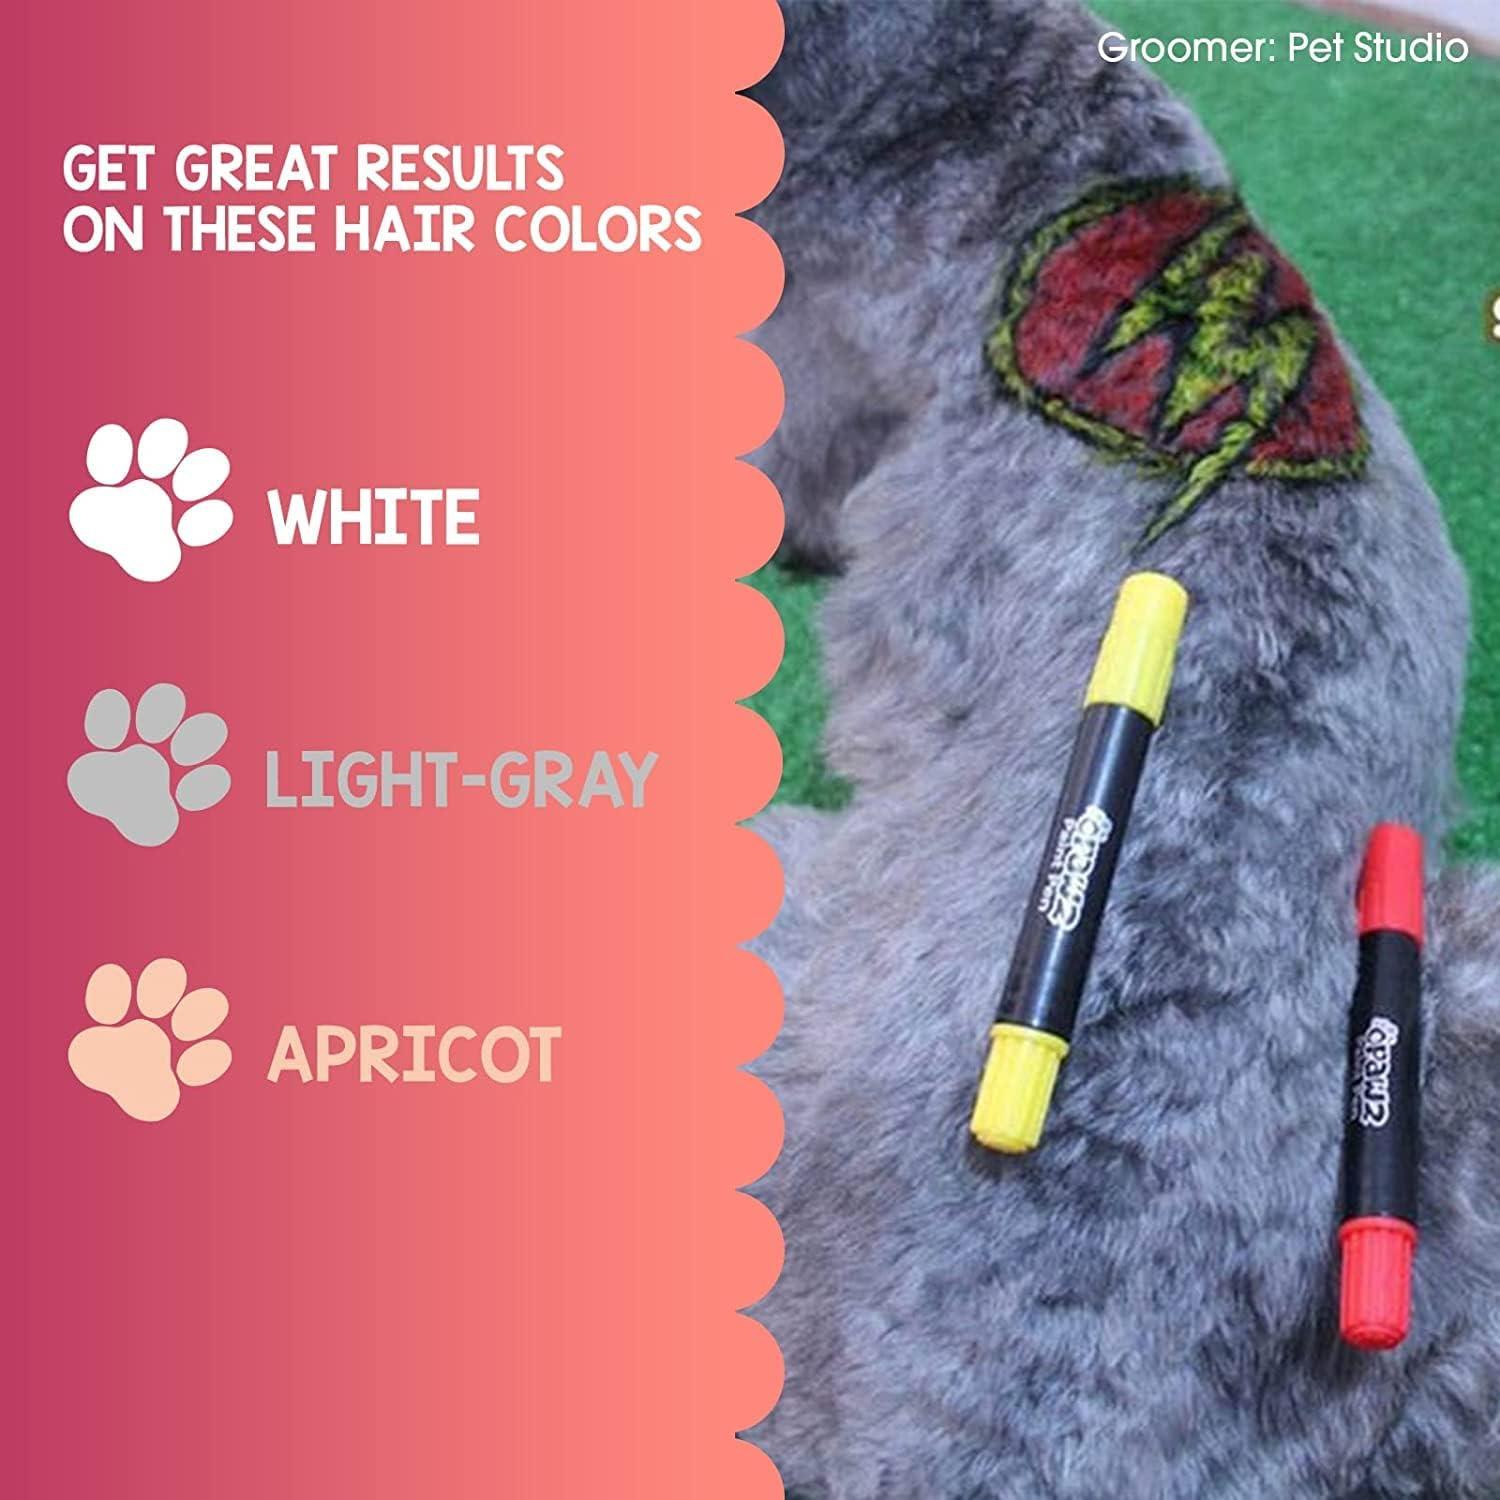 Black Pet Paint Pen - Temporarily Pet Color - Safe and Non-Toxic